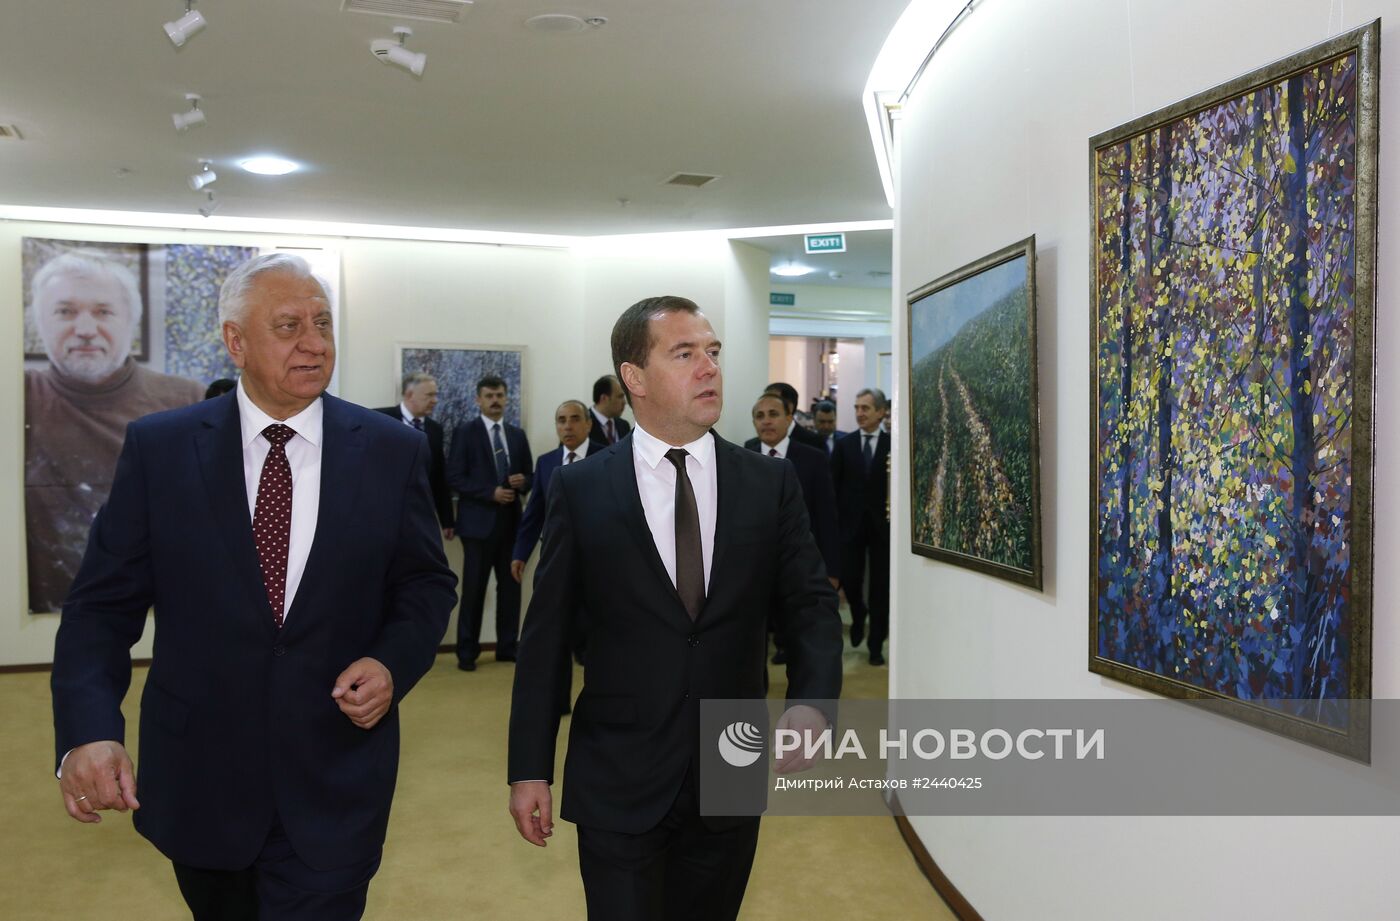 Д.Медведев принял участие в заседании Совета глав правительств СНГ